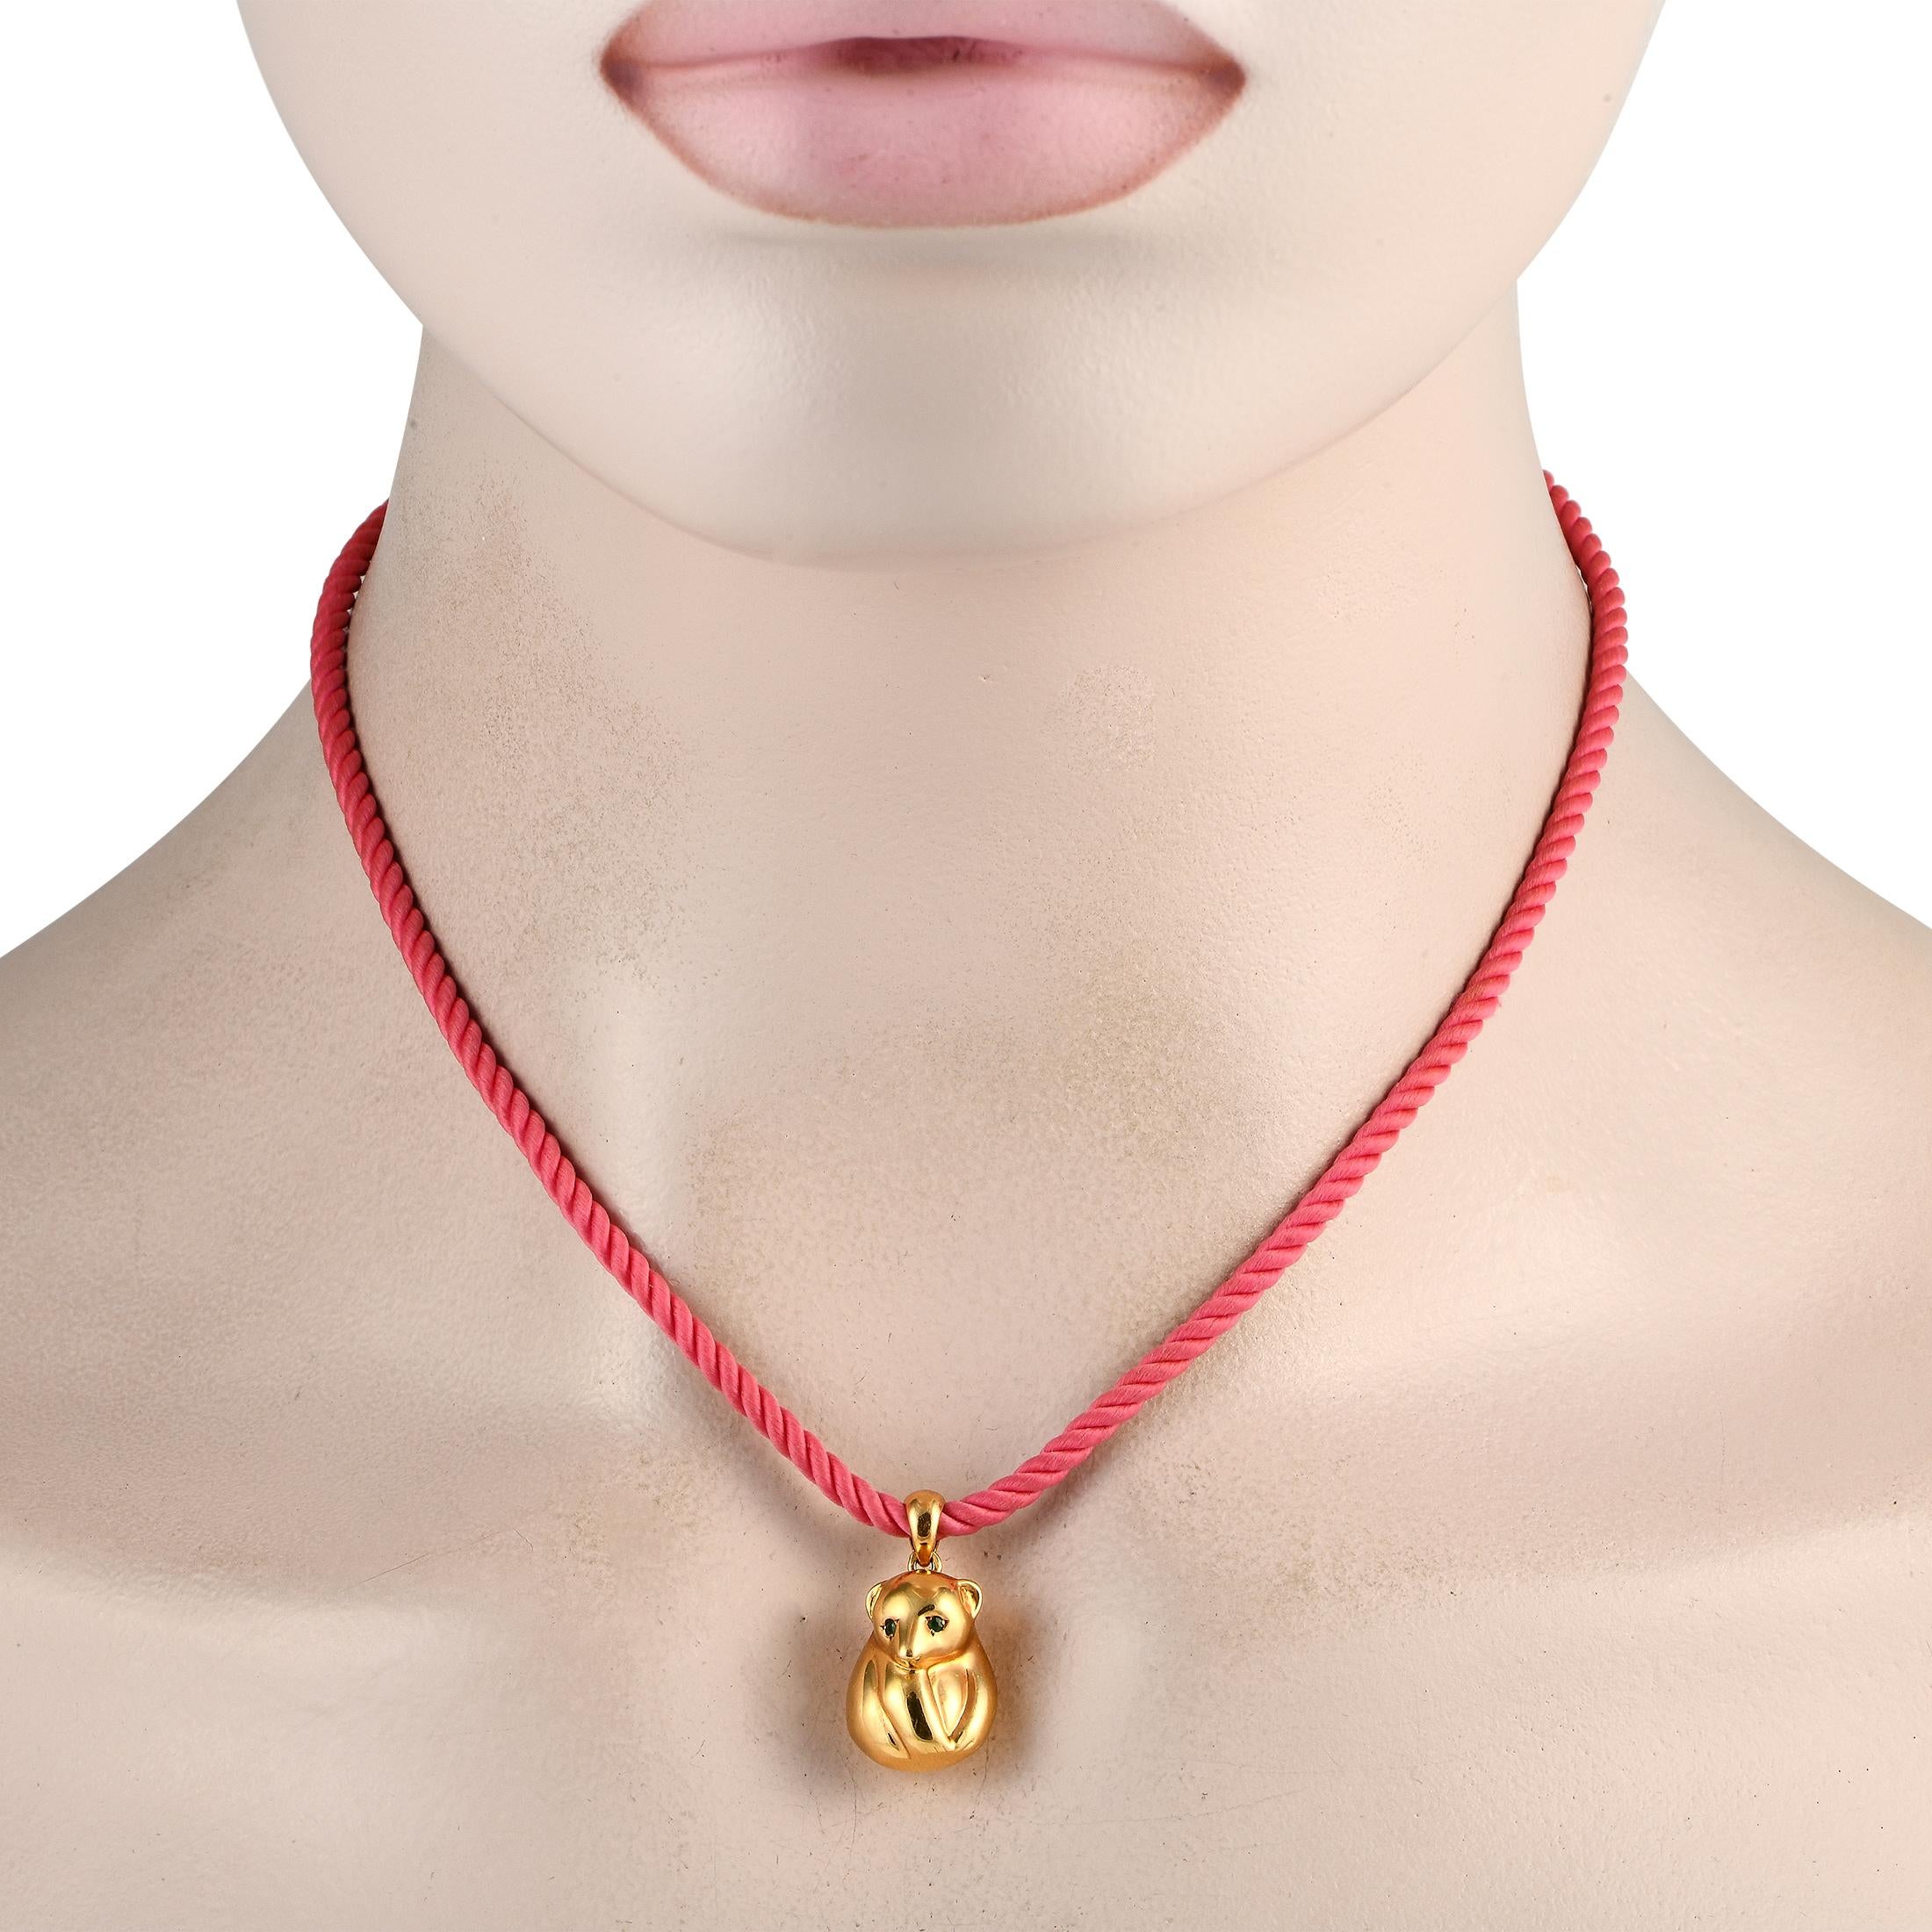 Ce collier Van Cleef & Arpels possède un charme unique. Suspendu au cordon vibrant de 16